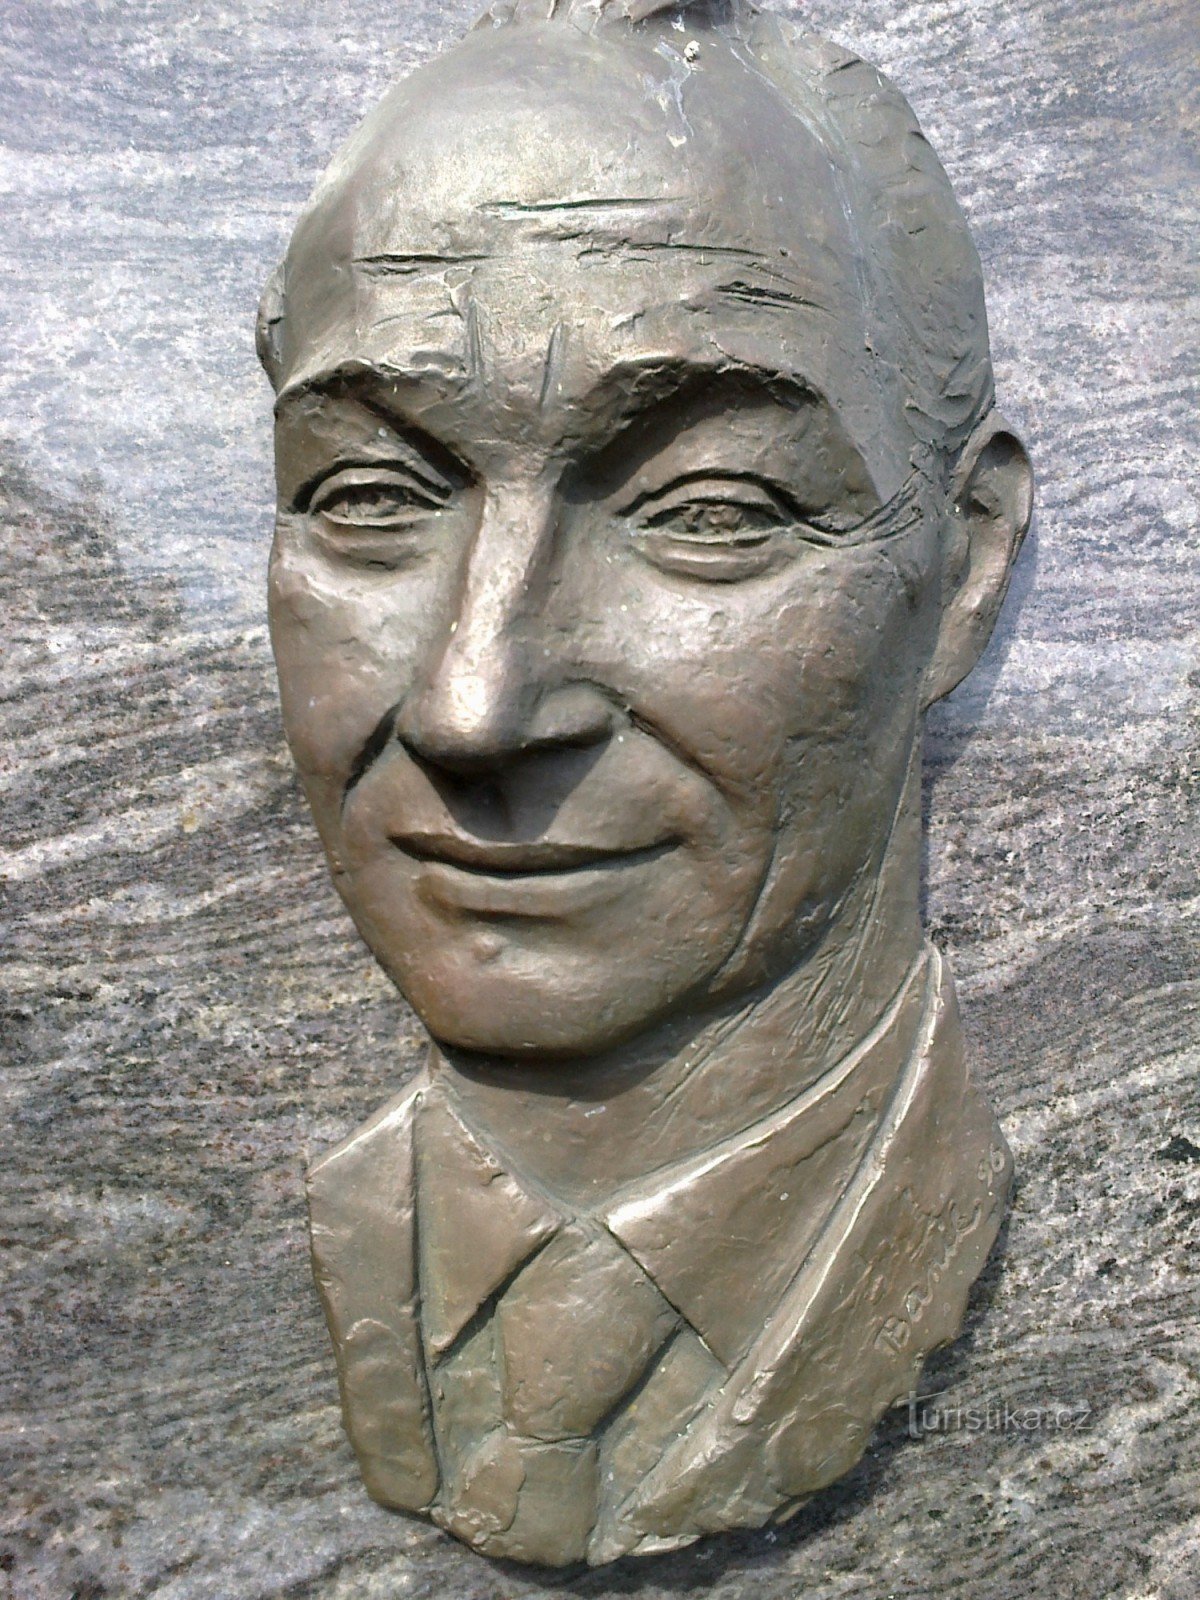 particolare del monumento ad A. Dubček.